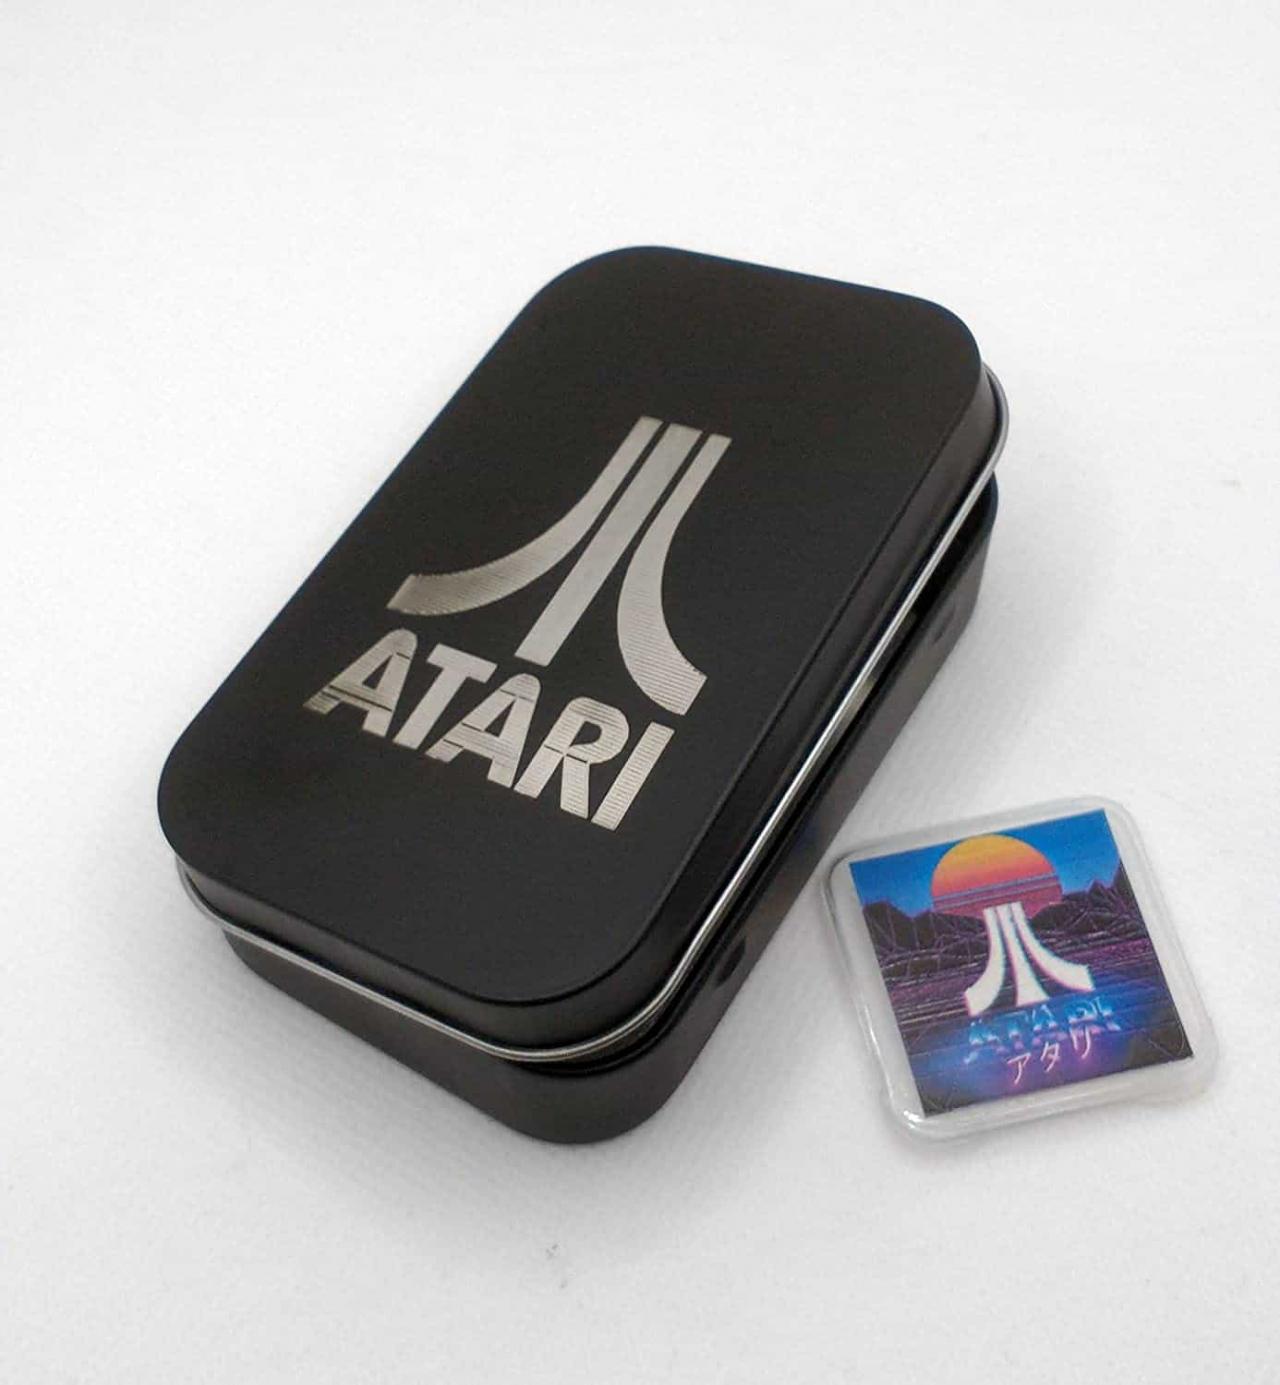 Atari 2600 Game Collection For The Hyperkin Retron 77